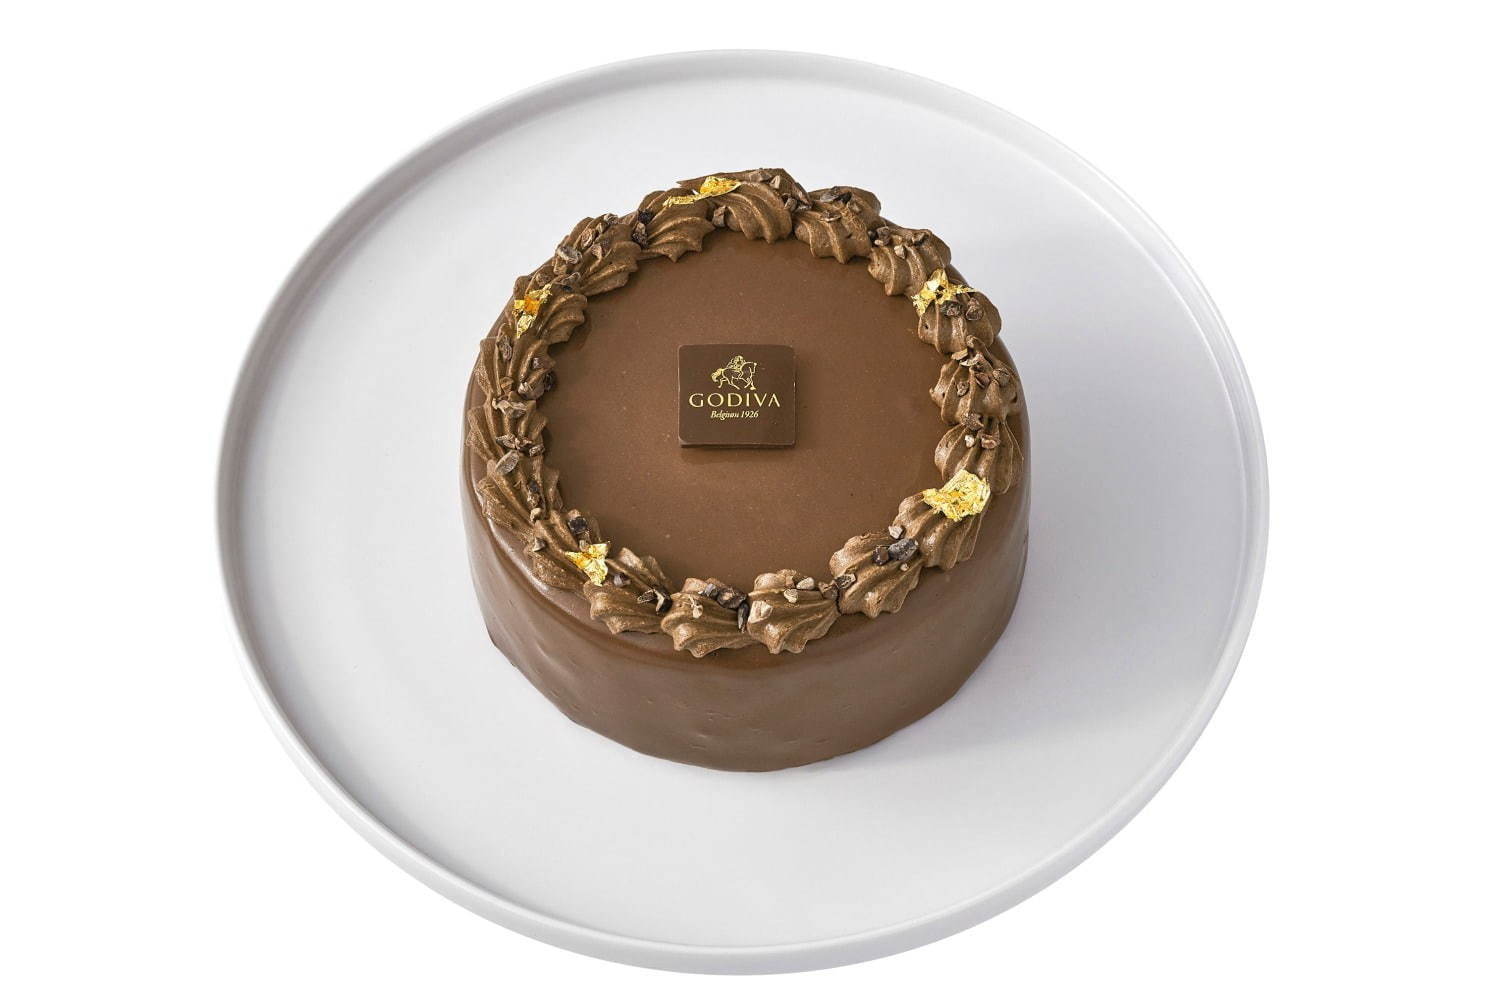 チョコレート専門店のクリスマスケーキ 高級ブランド 有名パティシエの予約必須ケーキ ファッションプレス